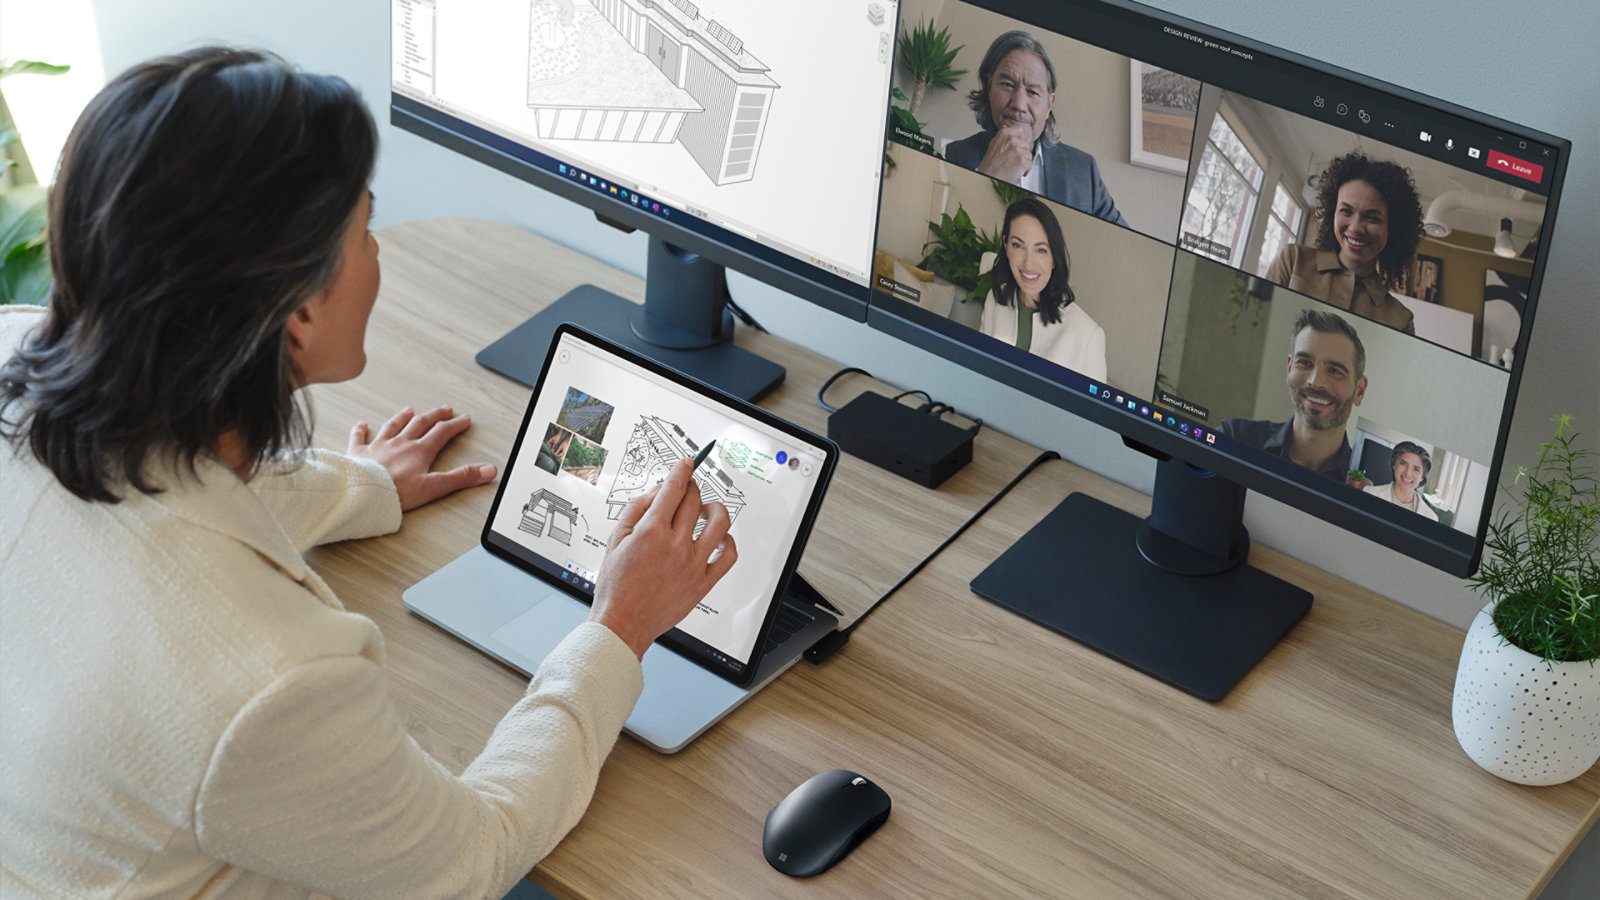 法人向け Surface Laptop Studio の画面を見ながらジェスチャーをする人物。背景のモニターには Teams で通話中の人物が映っている。